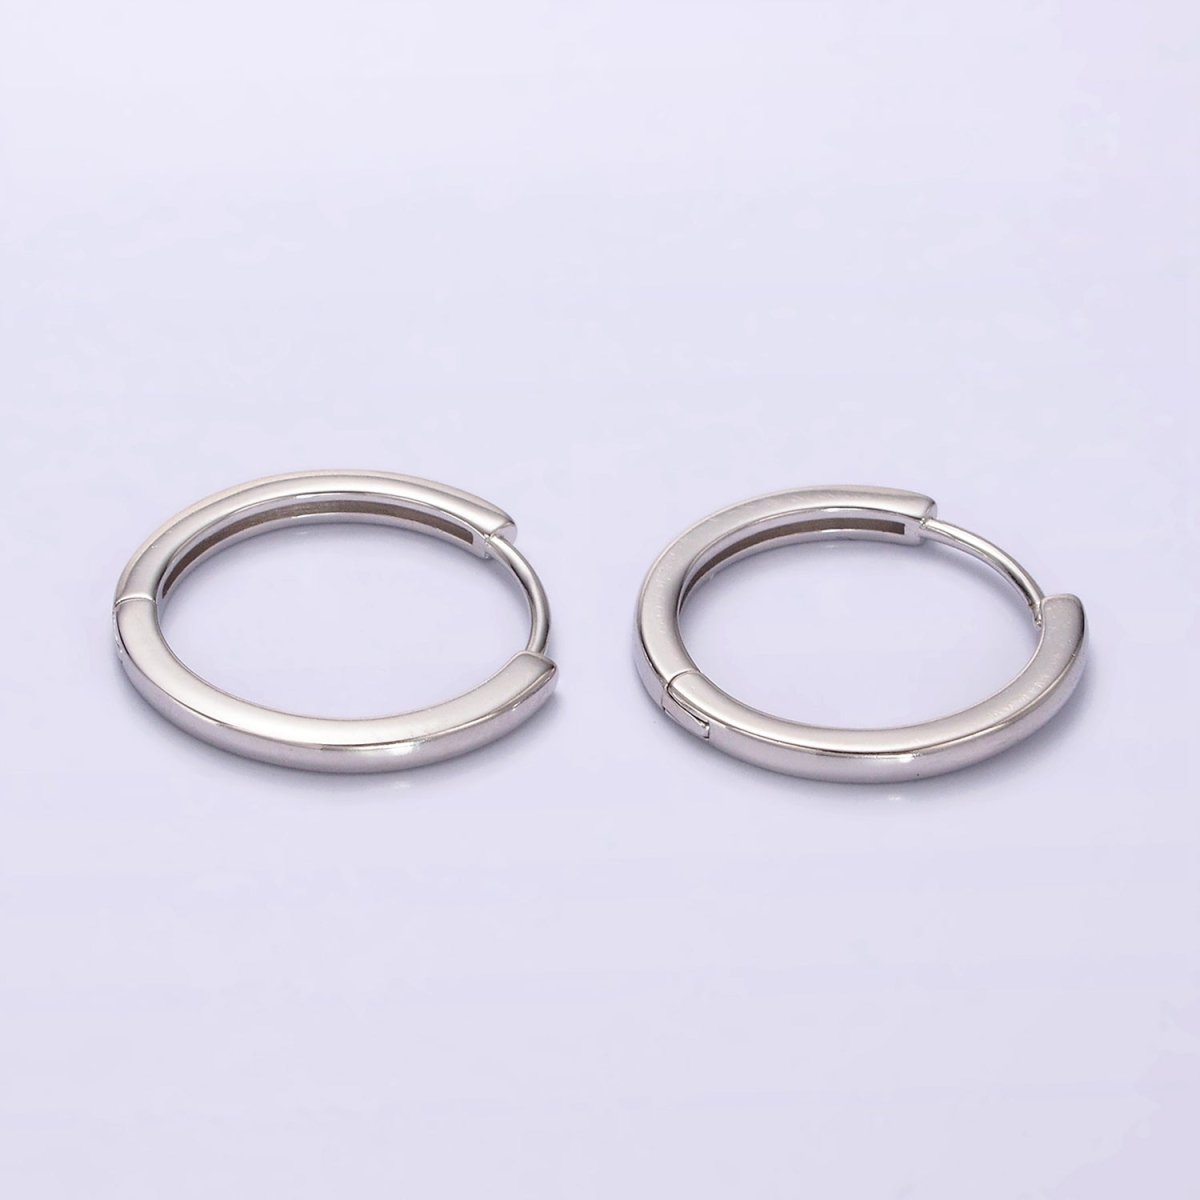 S925 Sterling Silver 23mm Thin Minimalist Huggie Endless Hoop Earrings | SL-413 - DLUXCA